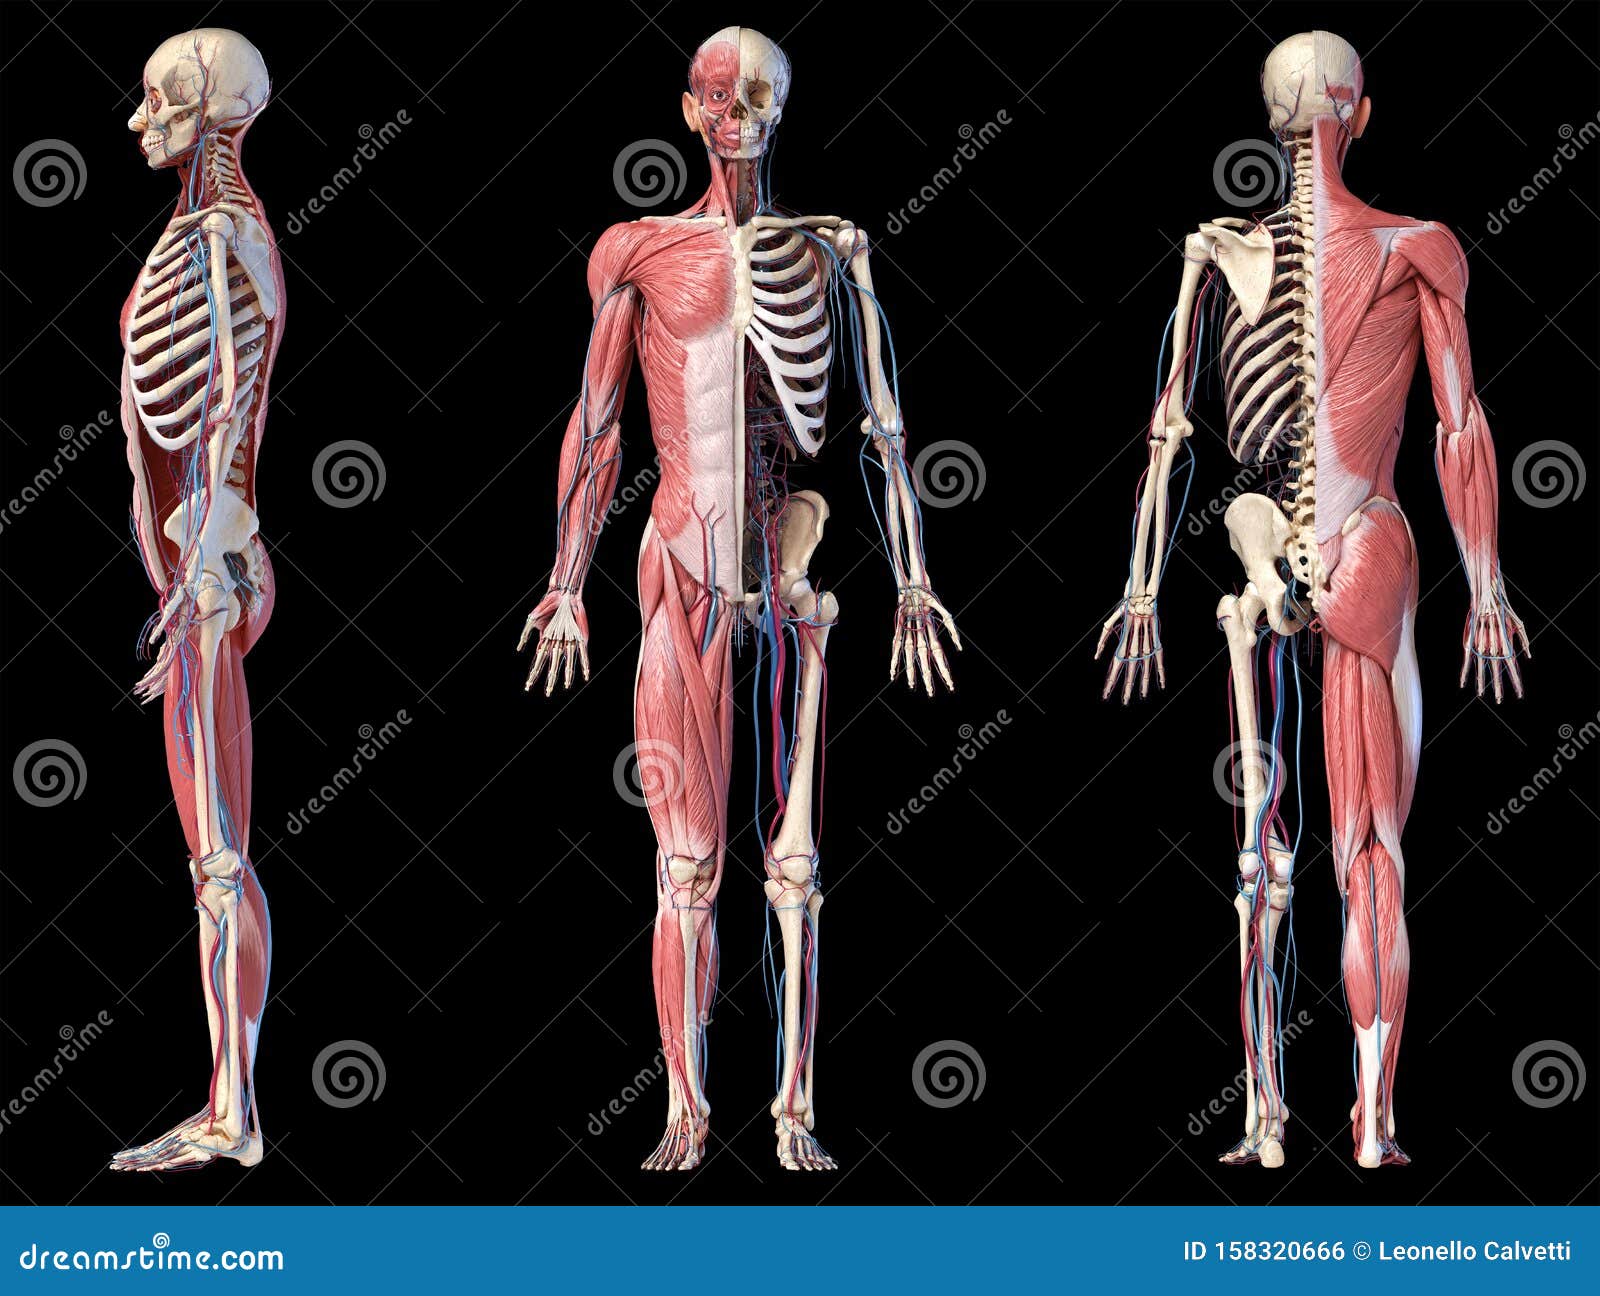 Illustrazione Di Anatomia Umana E Dello Scheletro Illustrazione Di My